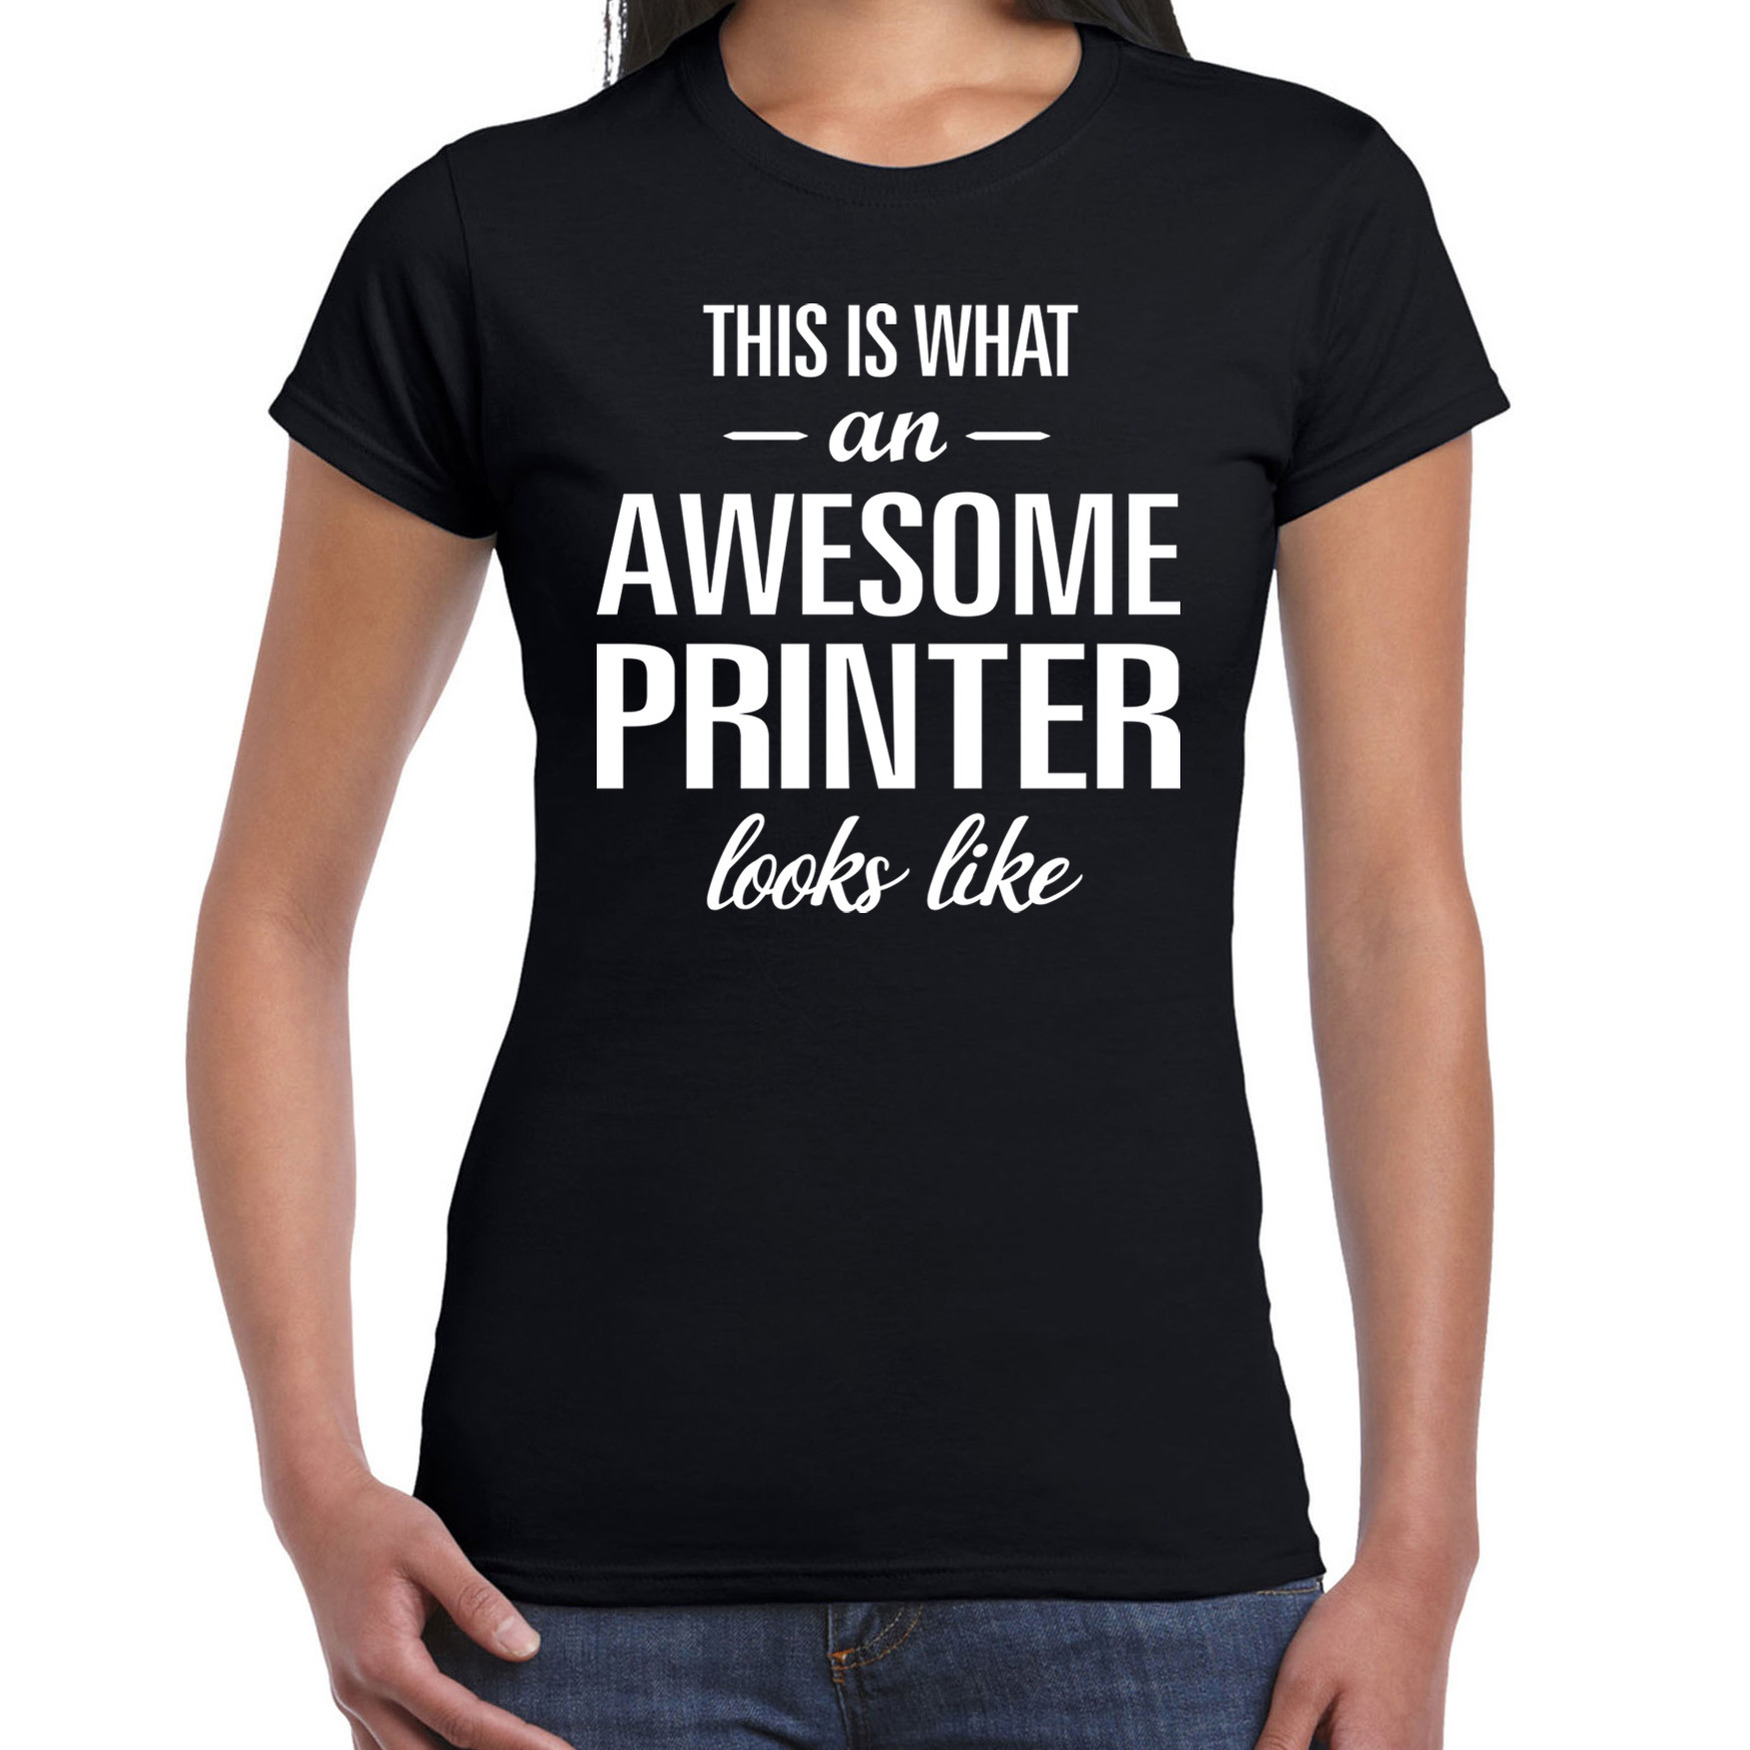 Awesome-geweldige printer cadeau t-shirt zwart voor dames